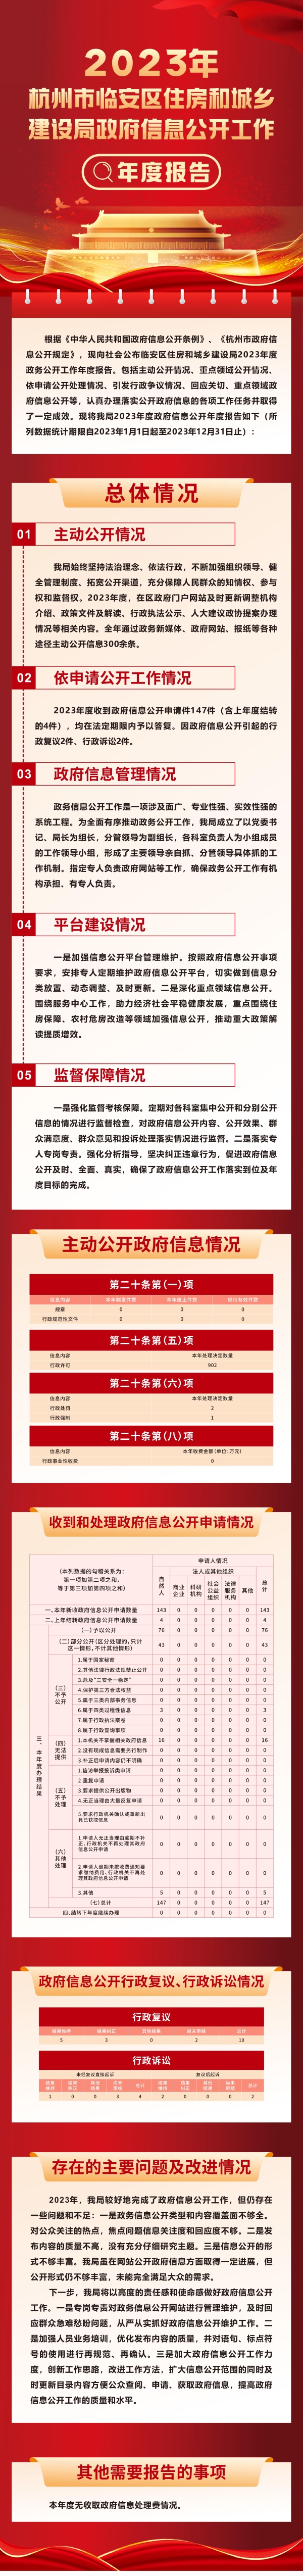 杭州市临安区住房和城乡建设局2023年政府信息公开工作年度报告.jpg